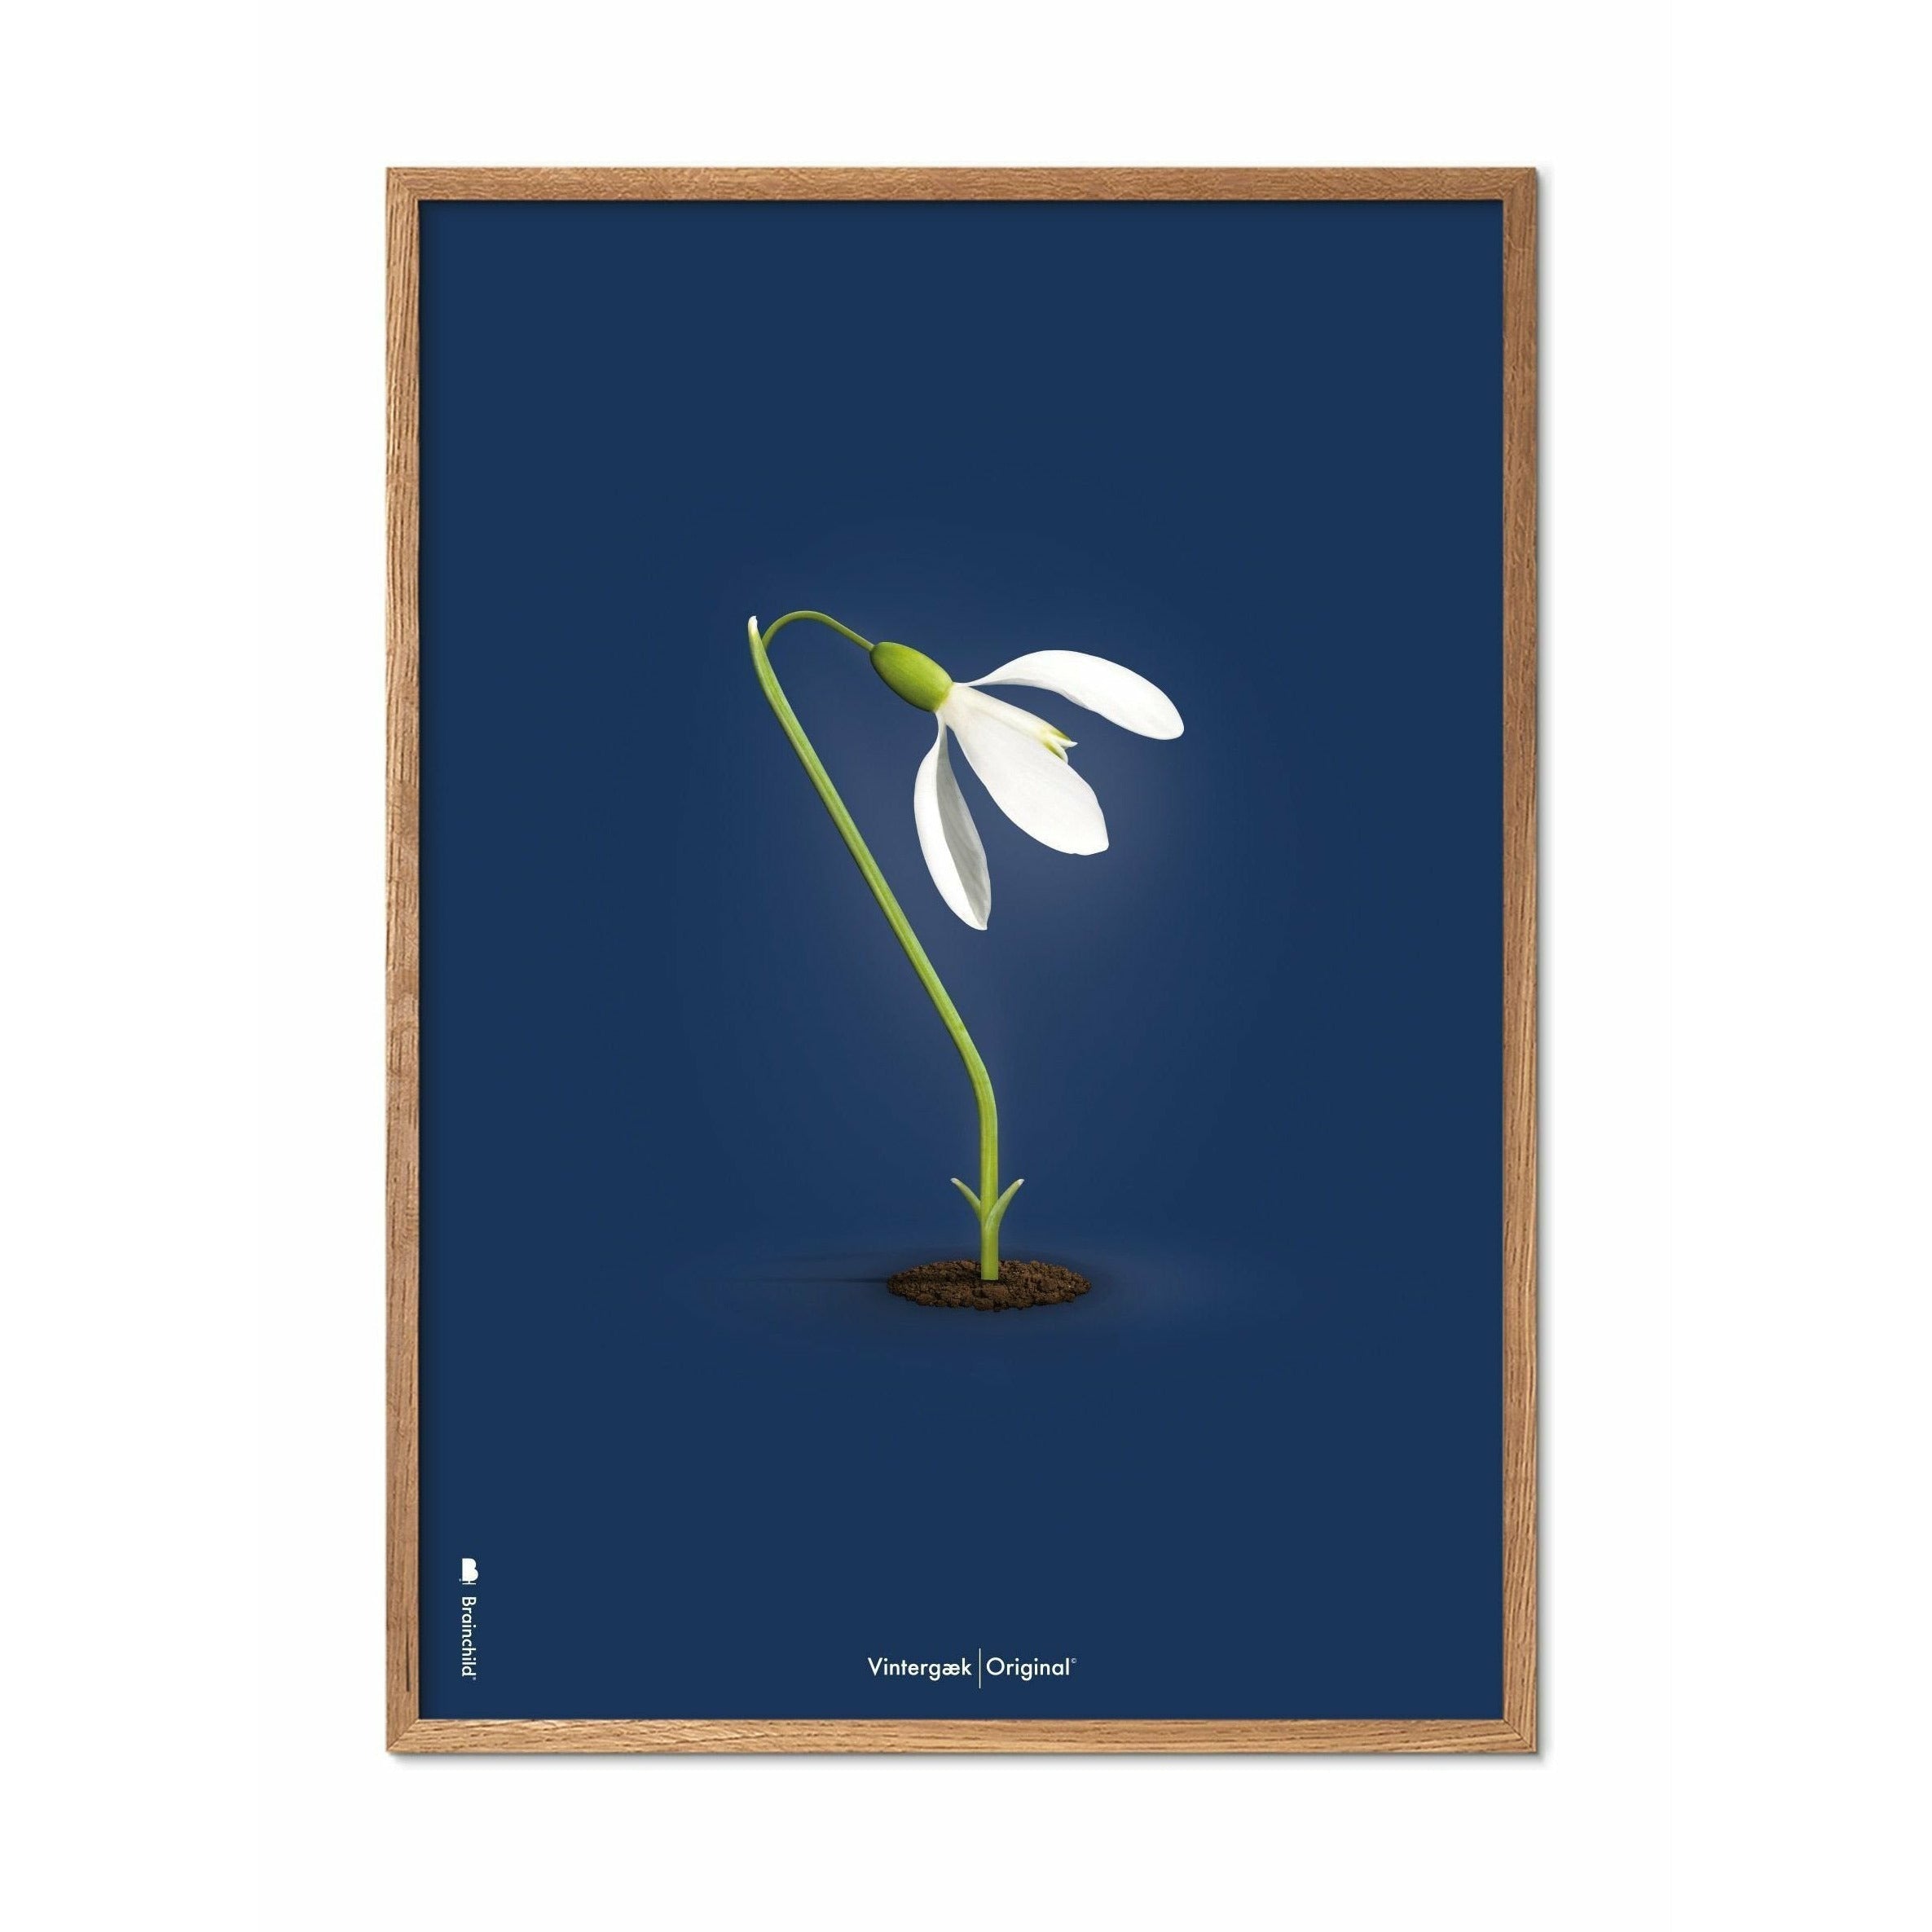 Brainchild Snowdrop Classic Poster, Frame Made of Light Wood A5, Mørkeblå bakgrunn